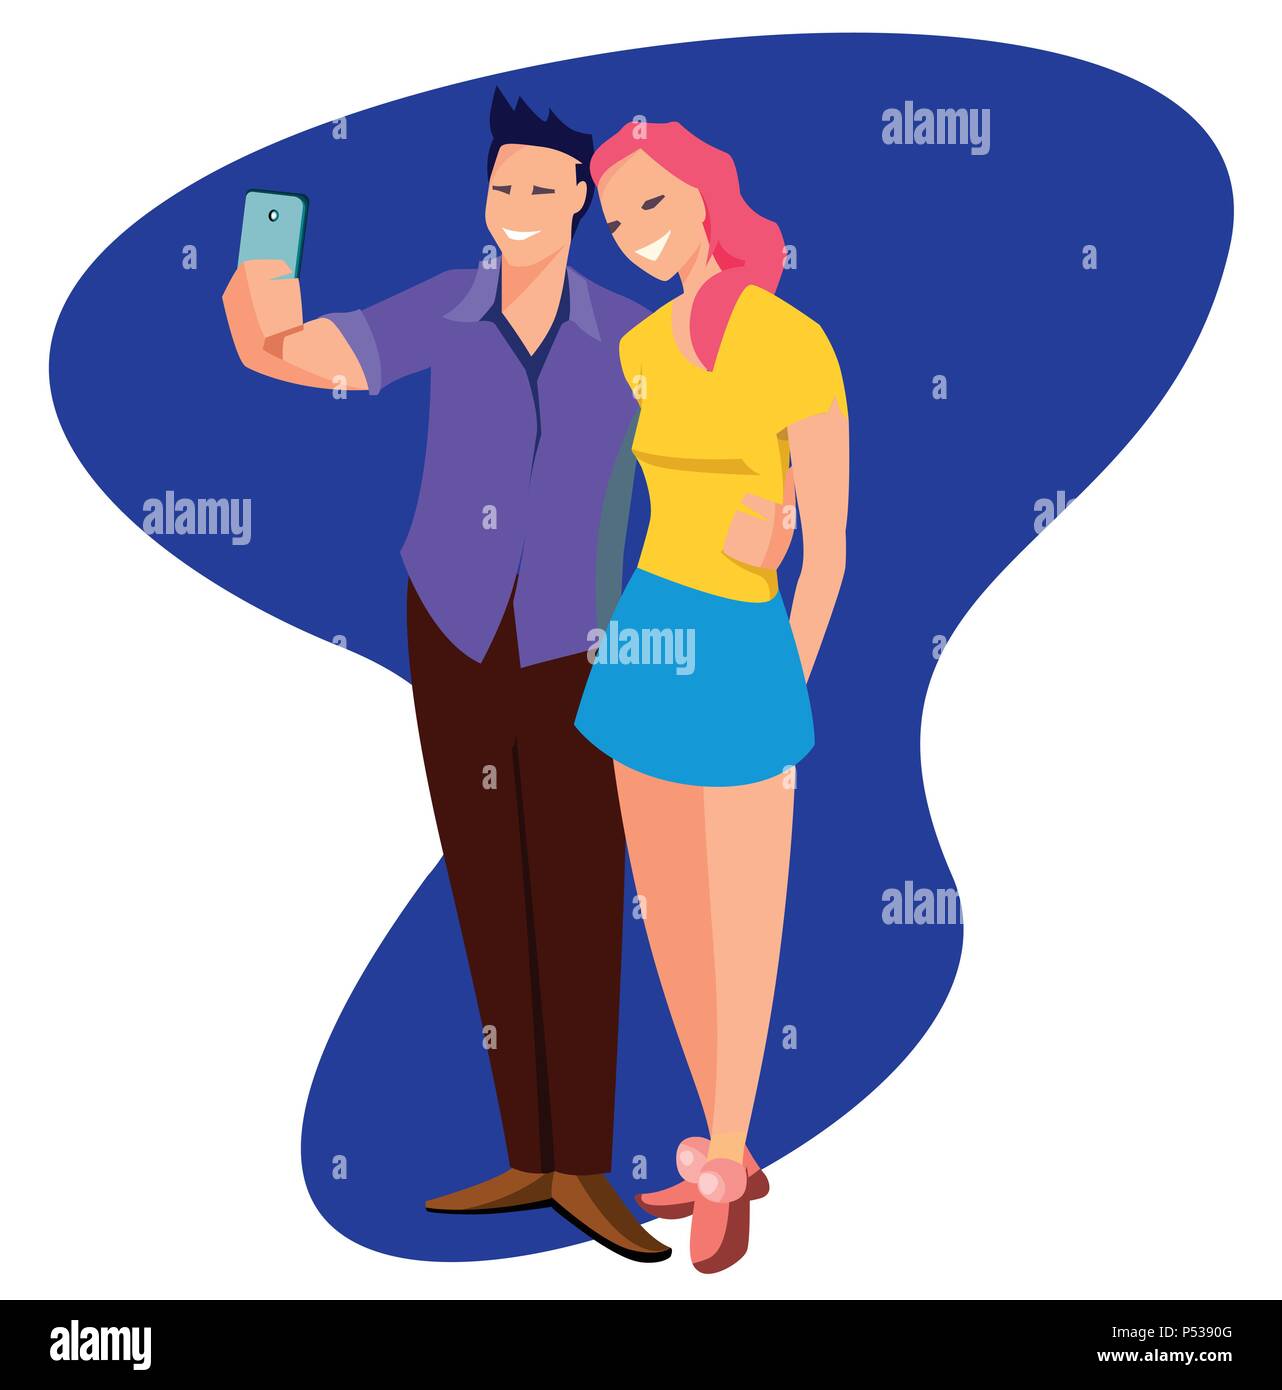 Junge nette freundliche Paar in Liebe nimmt selfie im flachen Stil. Cool flachbild Charakter Paar ständigen zusammen posieren in voller Länge die Bilder mit smart phone Stock Vektor